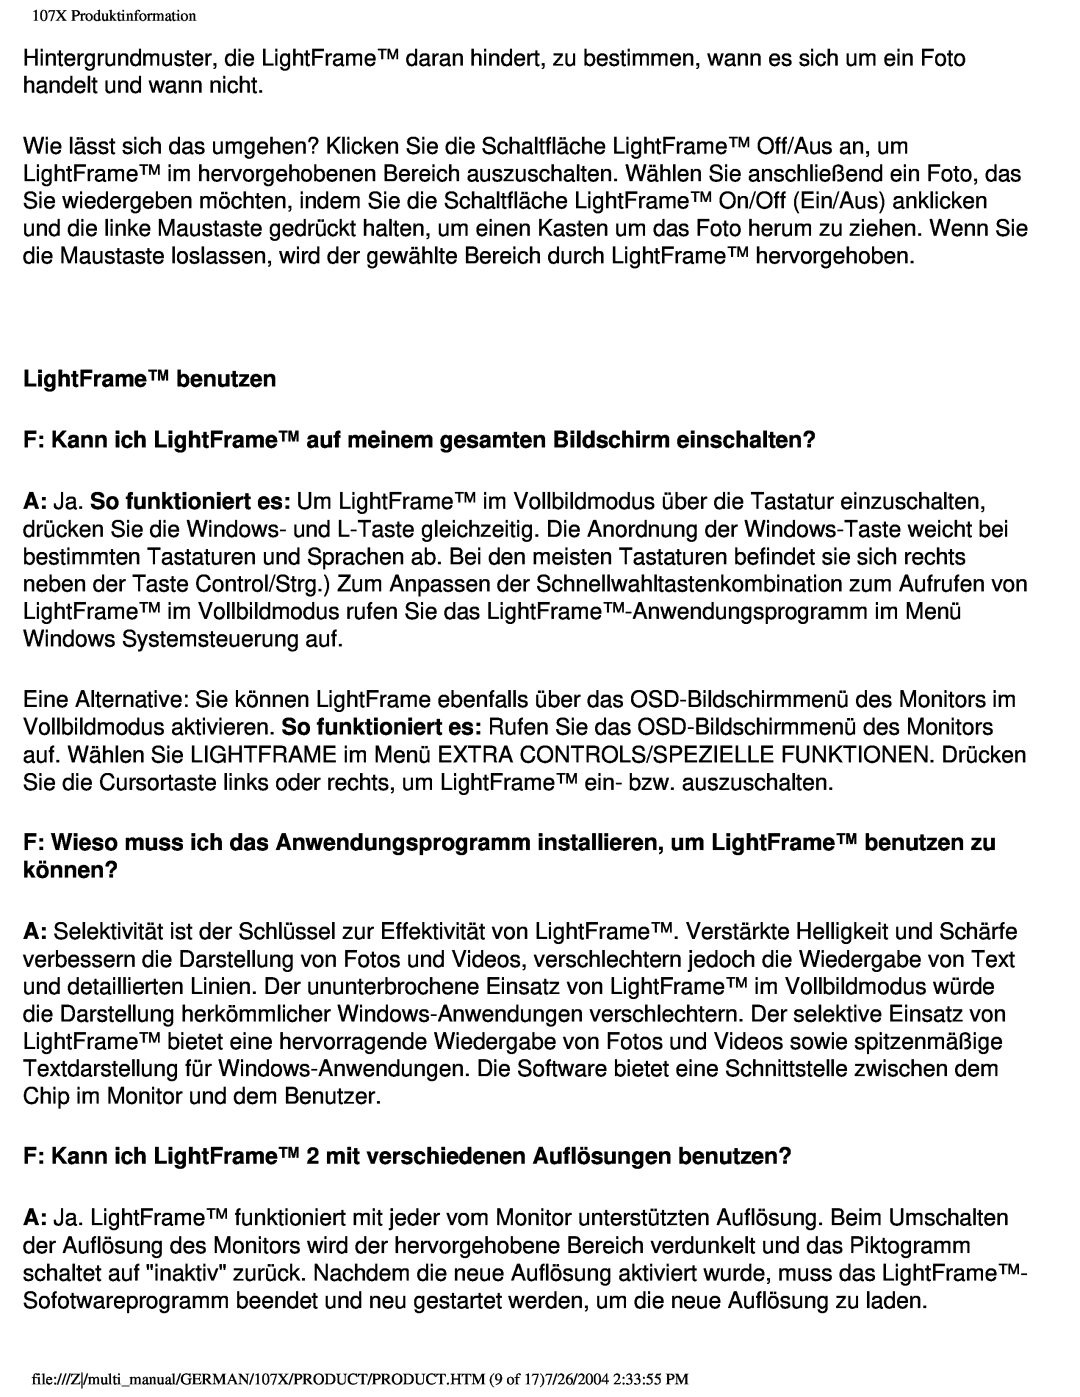 Philips 107X2 user manual LightFrame benutzen, F Kann ich LightFrame auf meinem gesamten Bildschirm einschalten? 